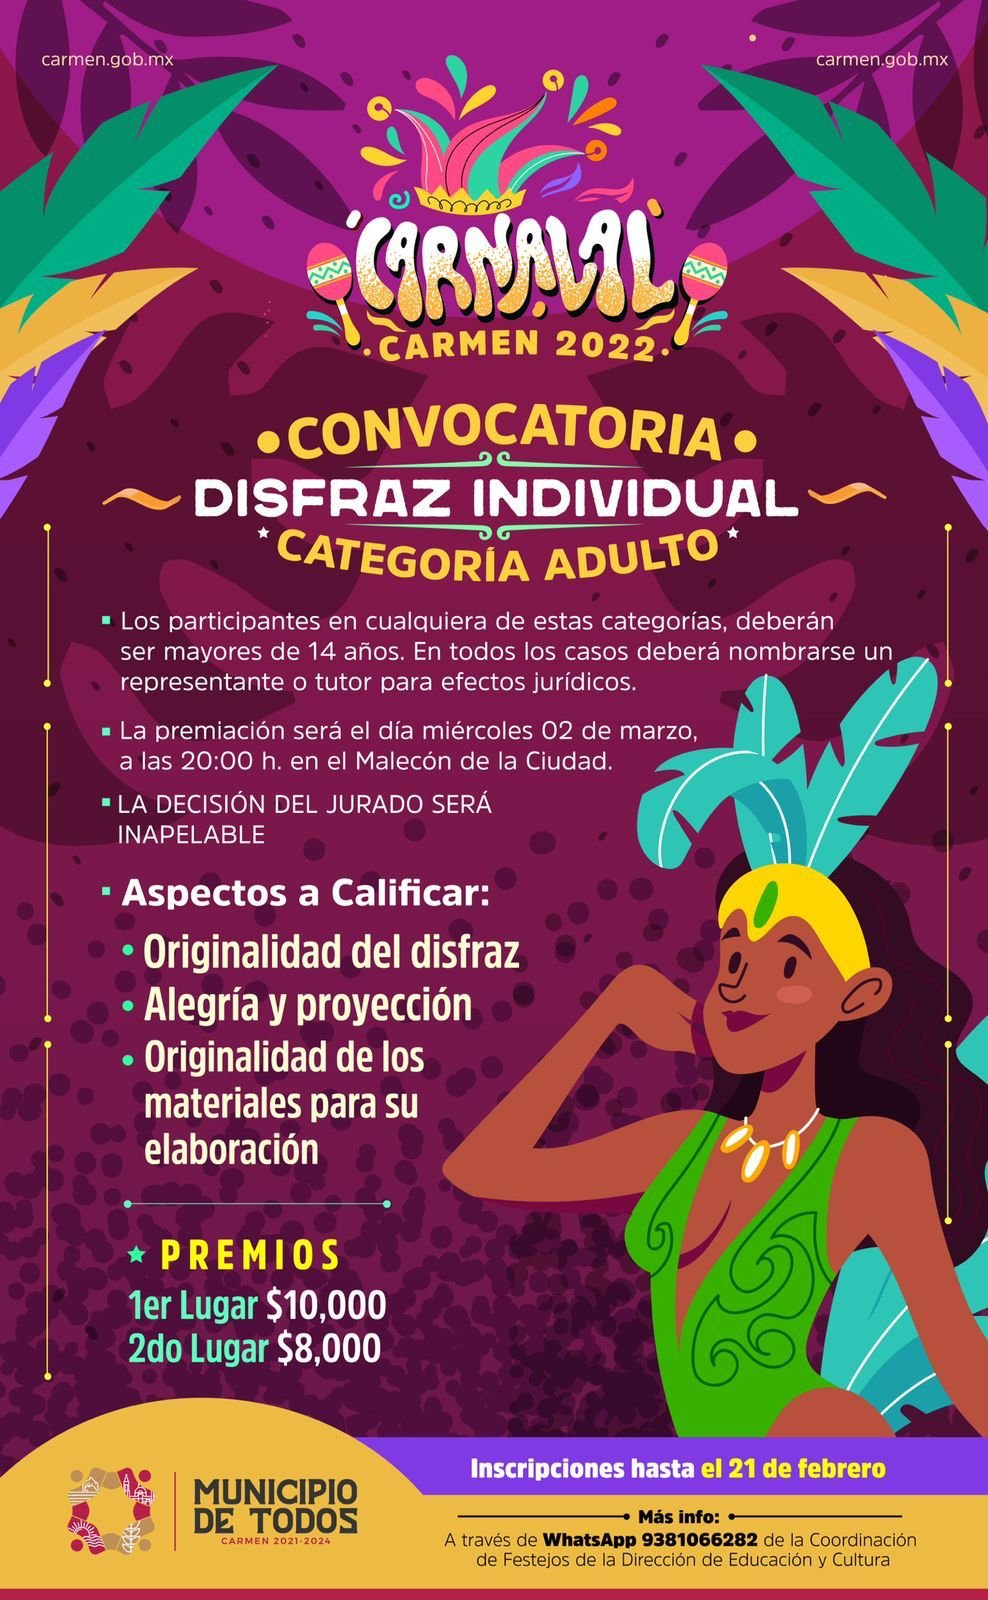 - PARTICIPA EN EL CARNAVAL CARMEN EN SU EDICIÓN 2022 - h-ayuntamiento-del-carmen, carnaval-carmen-2022